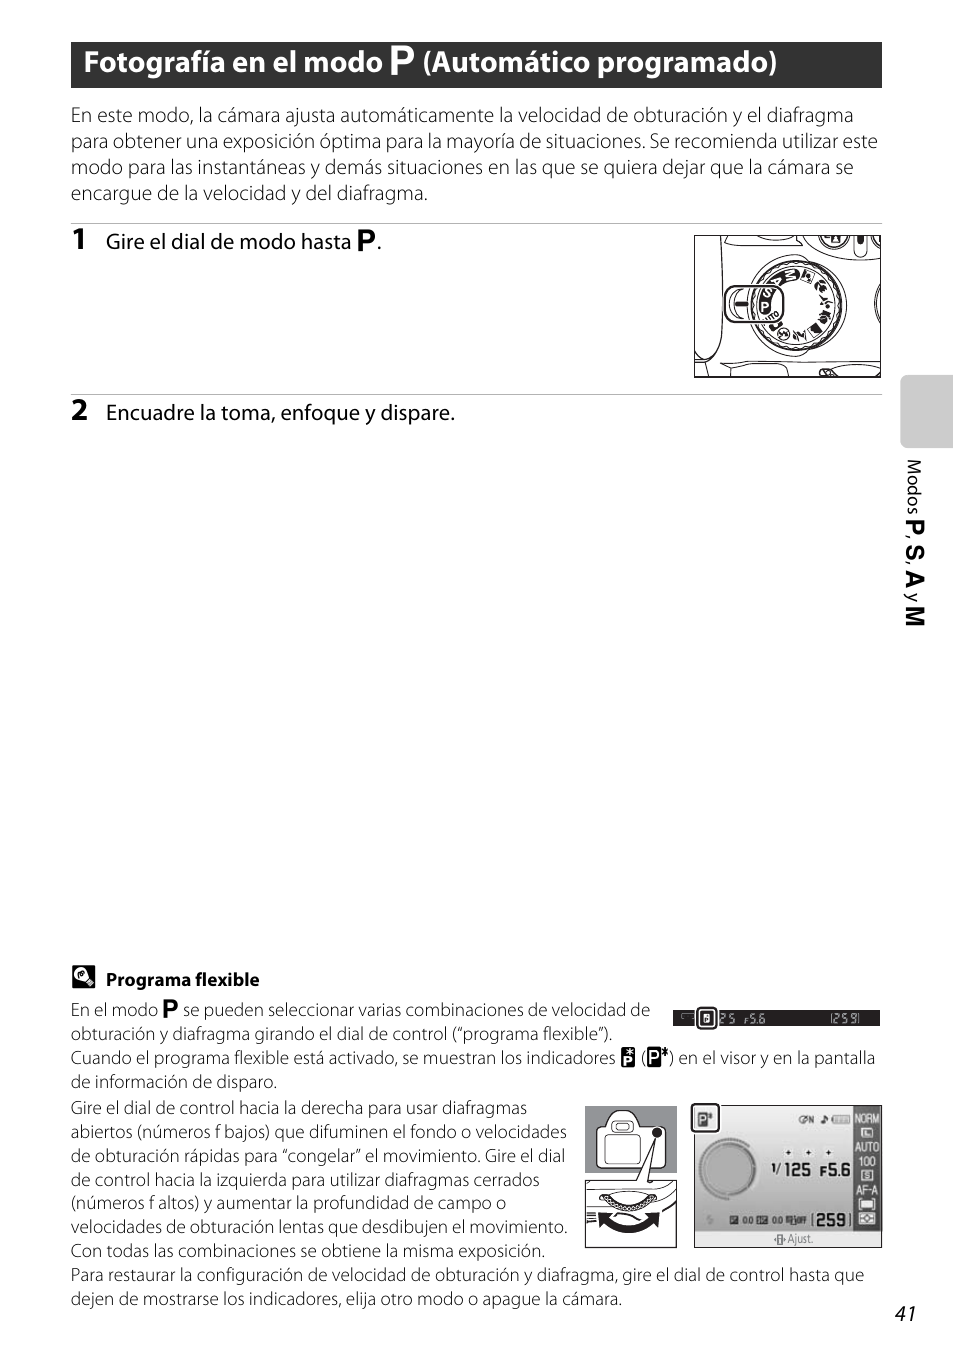 Fotografía en el modo p (automático programado), Fotografía en el modo a (automático programado), A 41) | A 41 | Nikon D60 Manual del usuario | Página 53 / 204